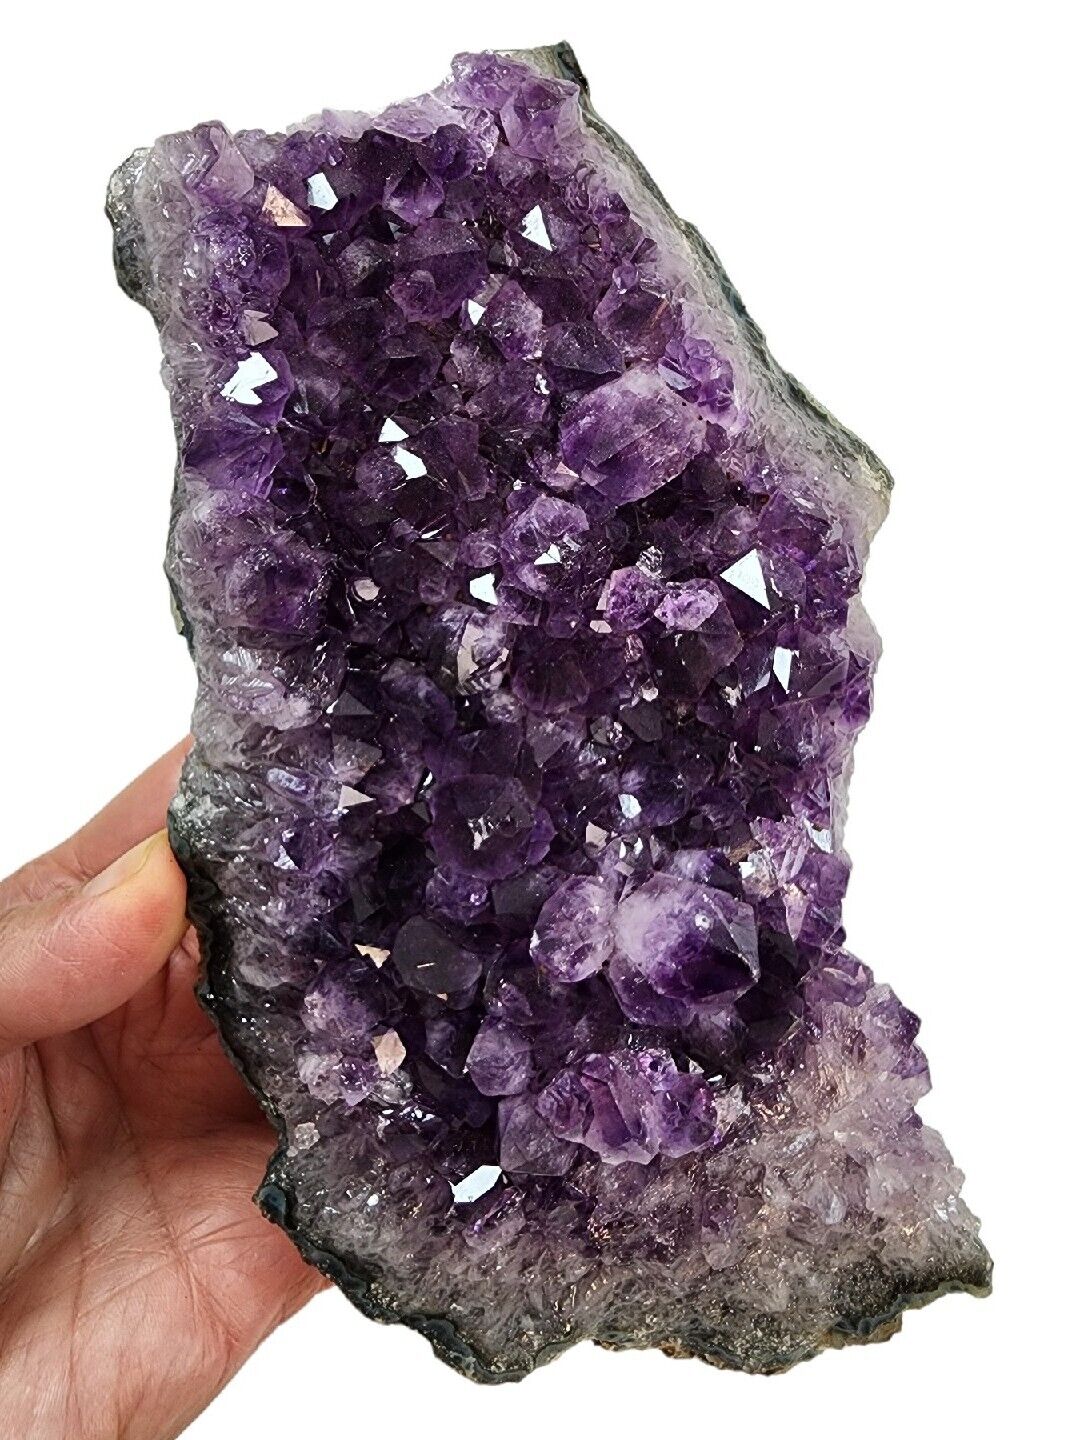 Amethyst Crystal Cluster 1lb 13.4oz.